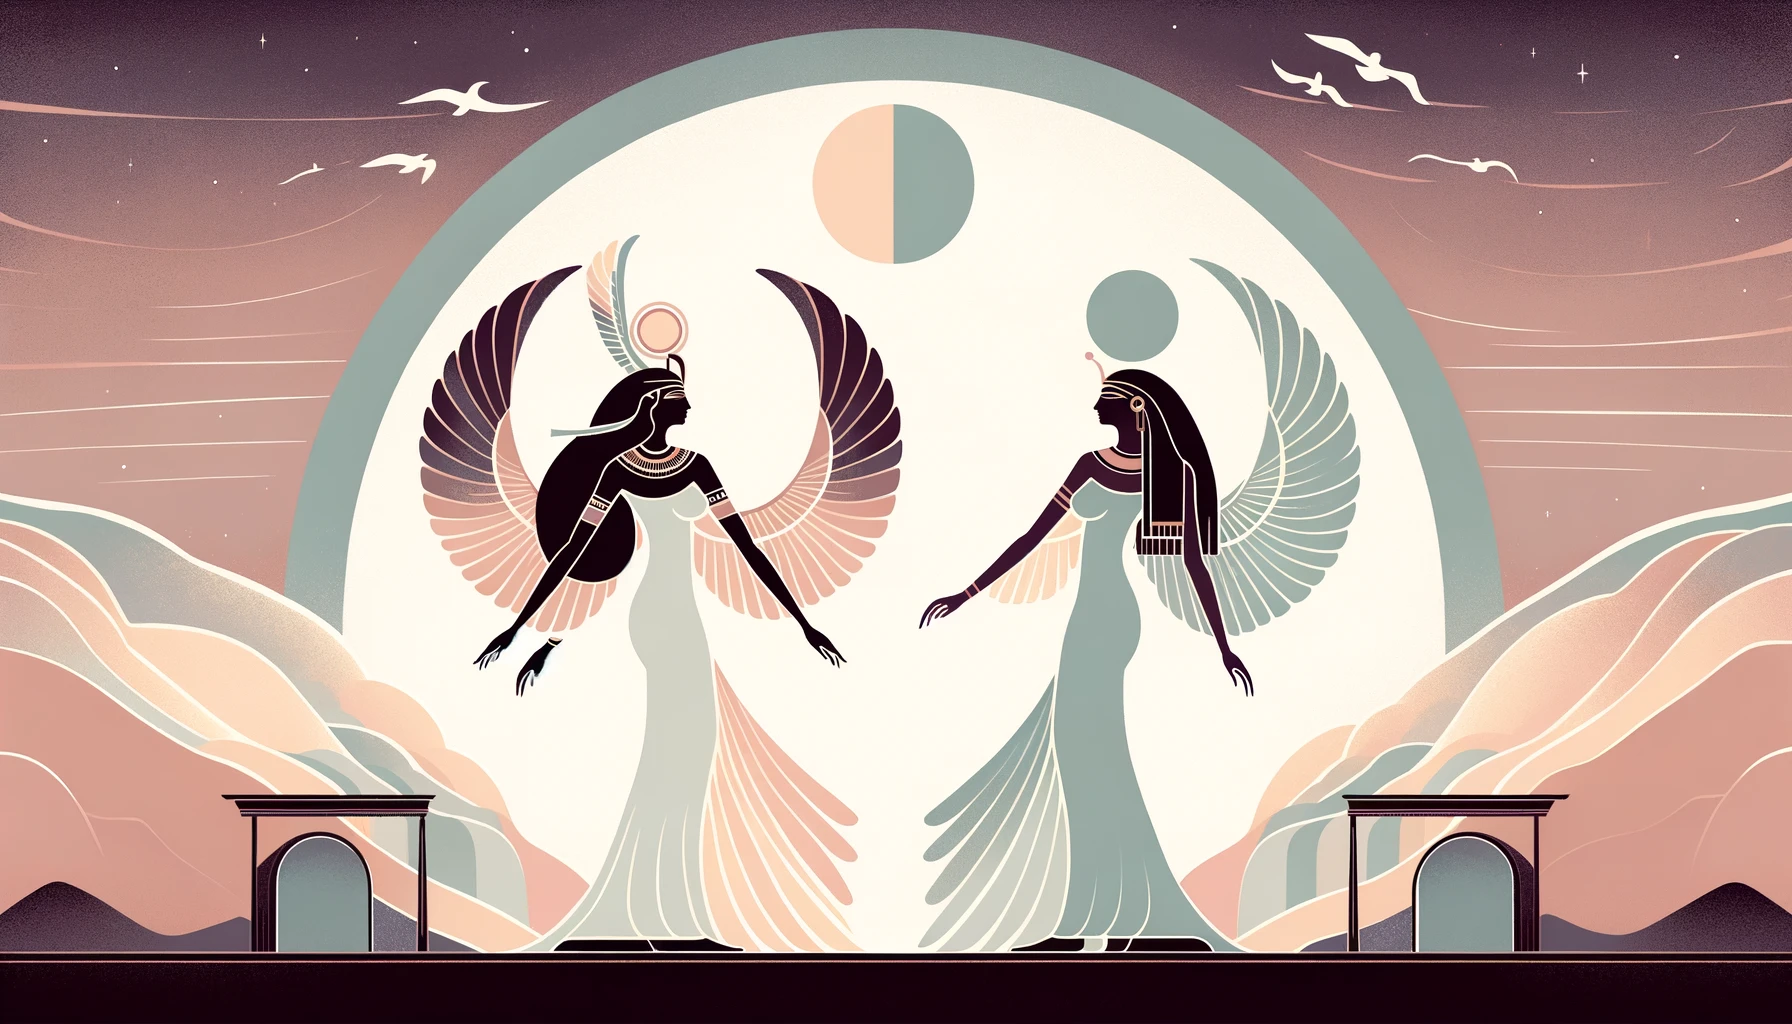 Nephthys vs Nut: A Celestial Duel in Egyptian Mythology